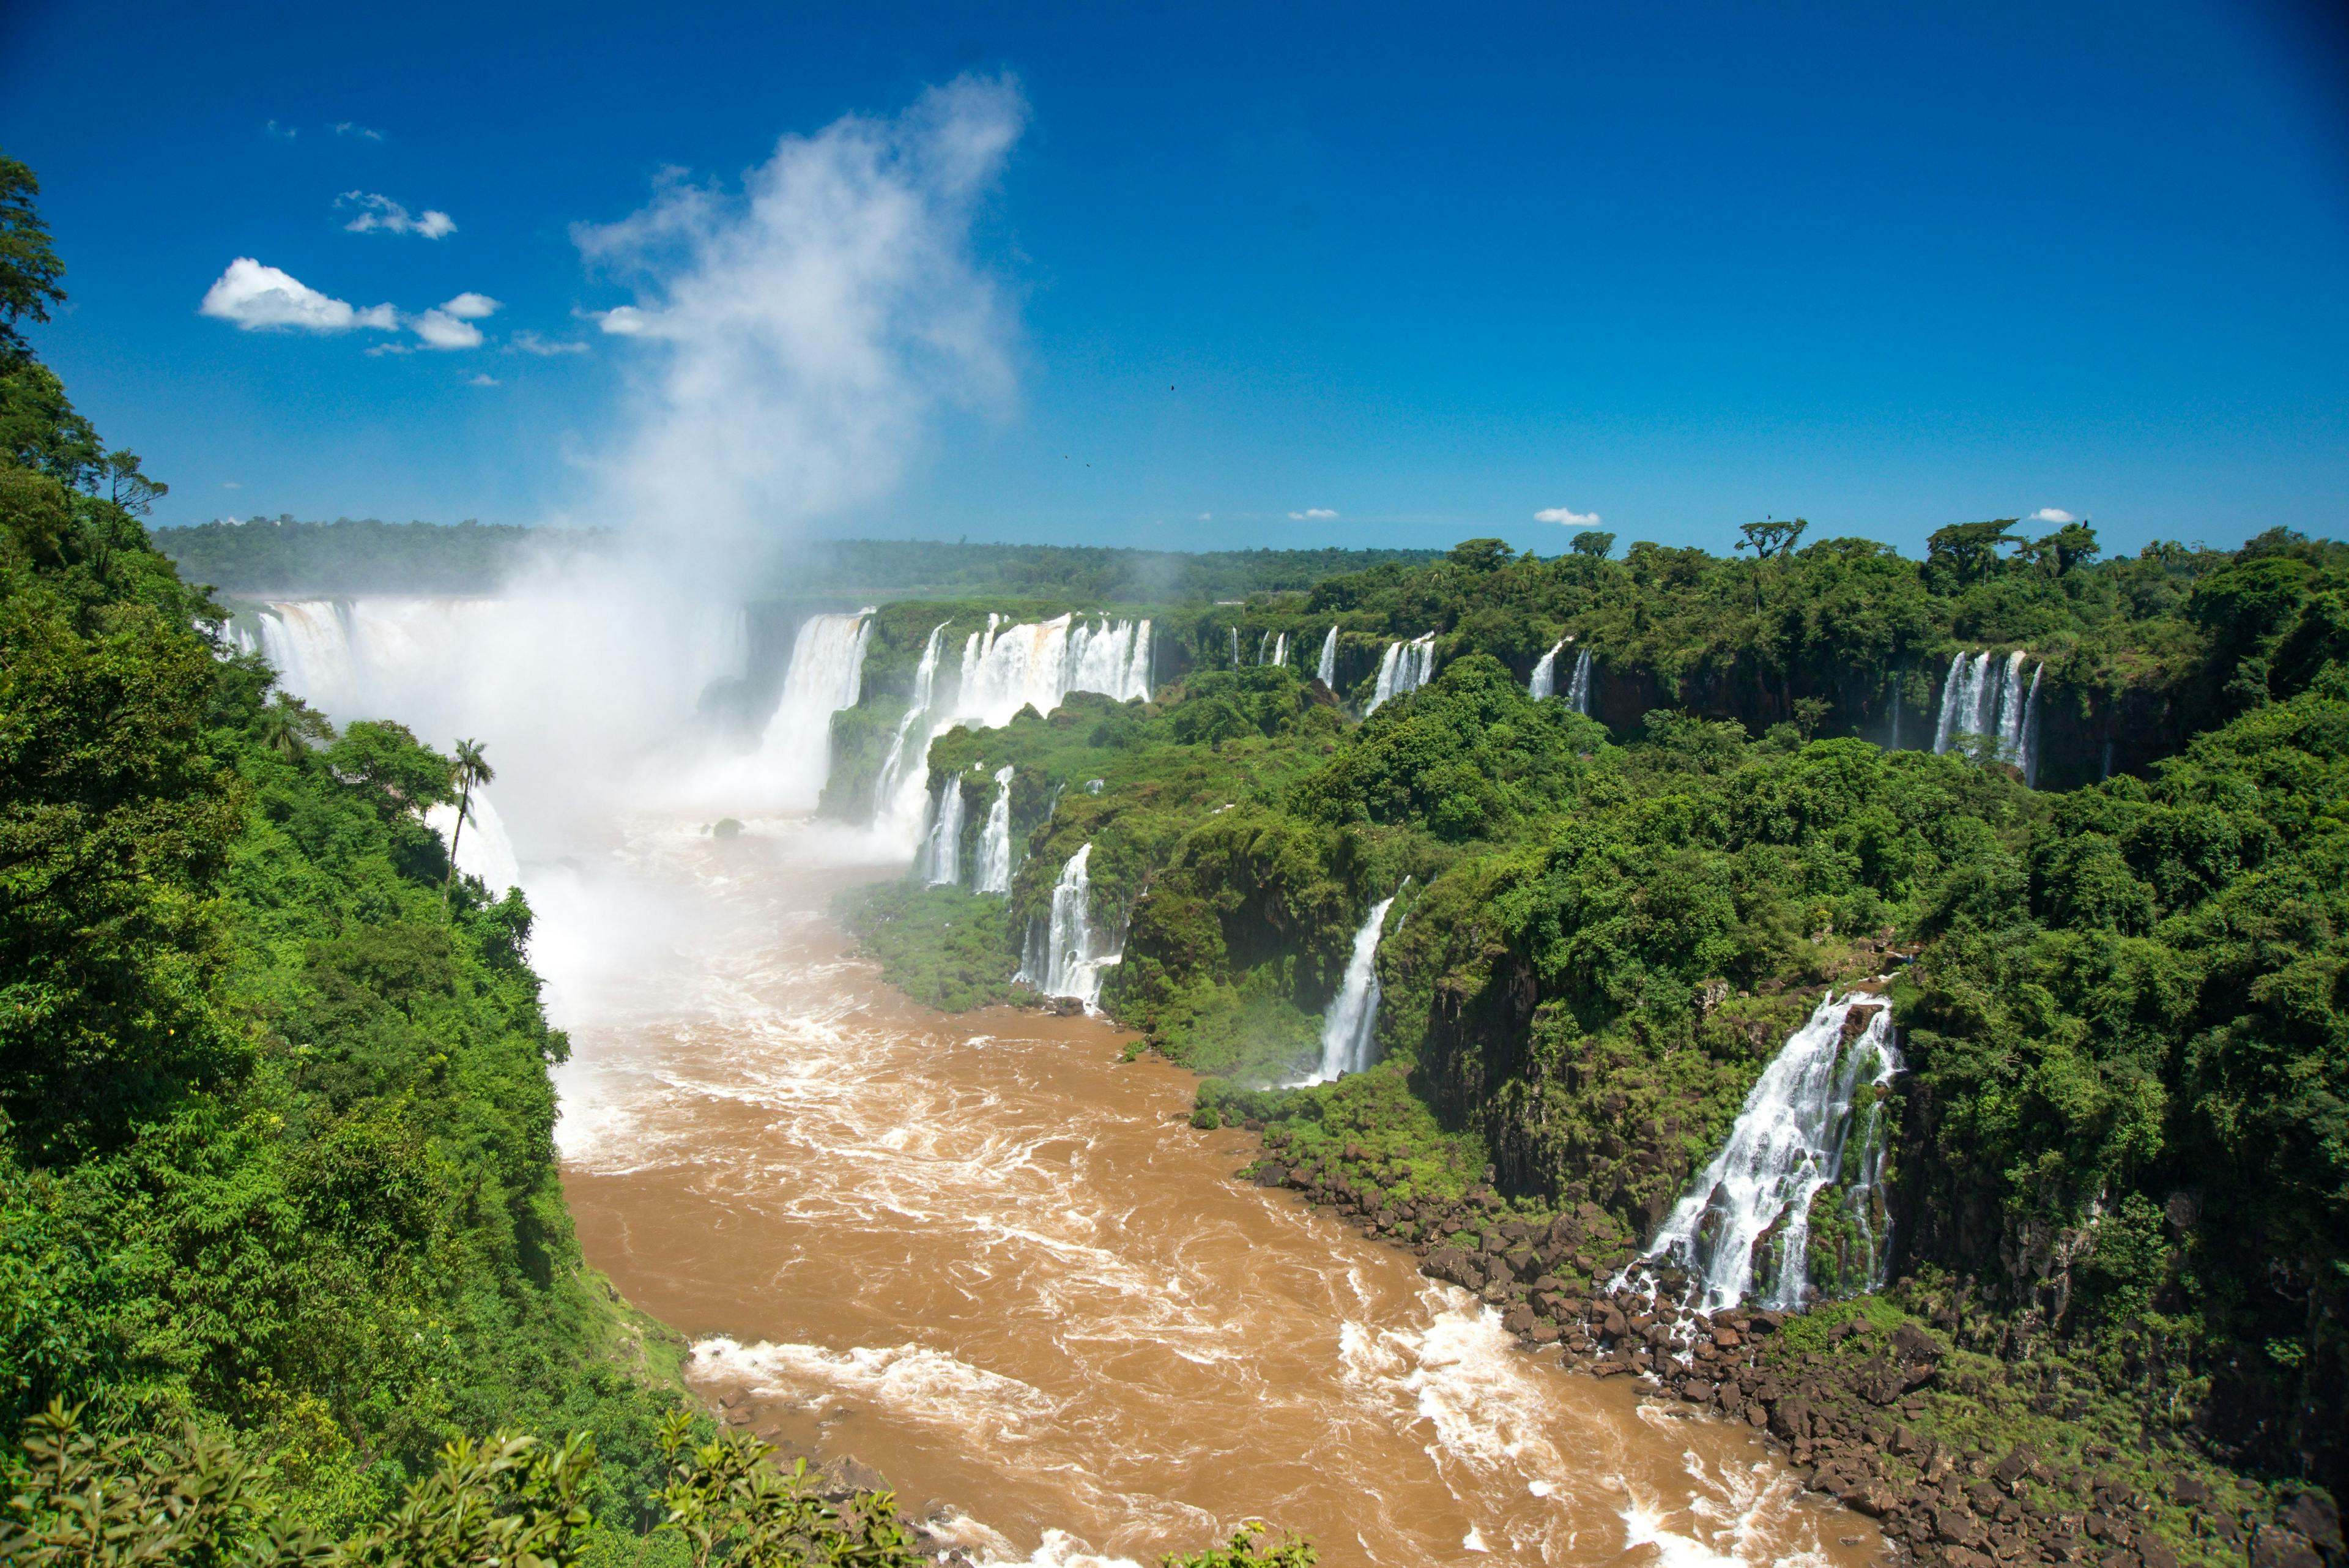 Beautiful Iguazu Falls in Brazil.